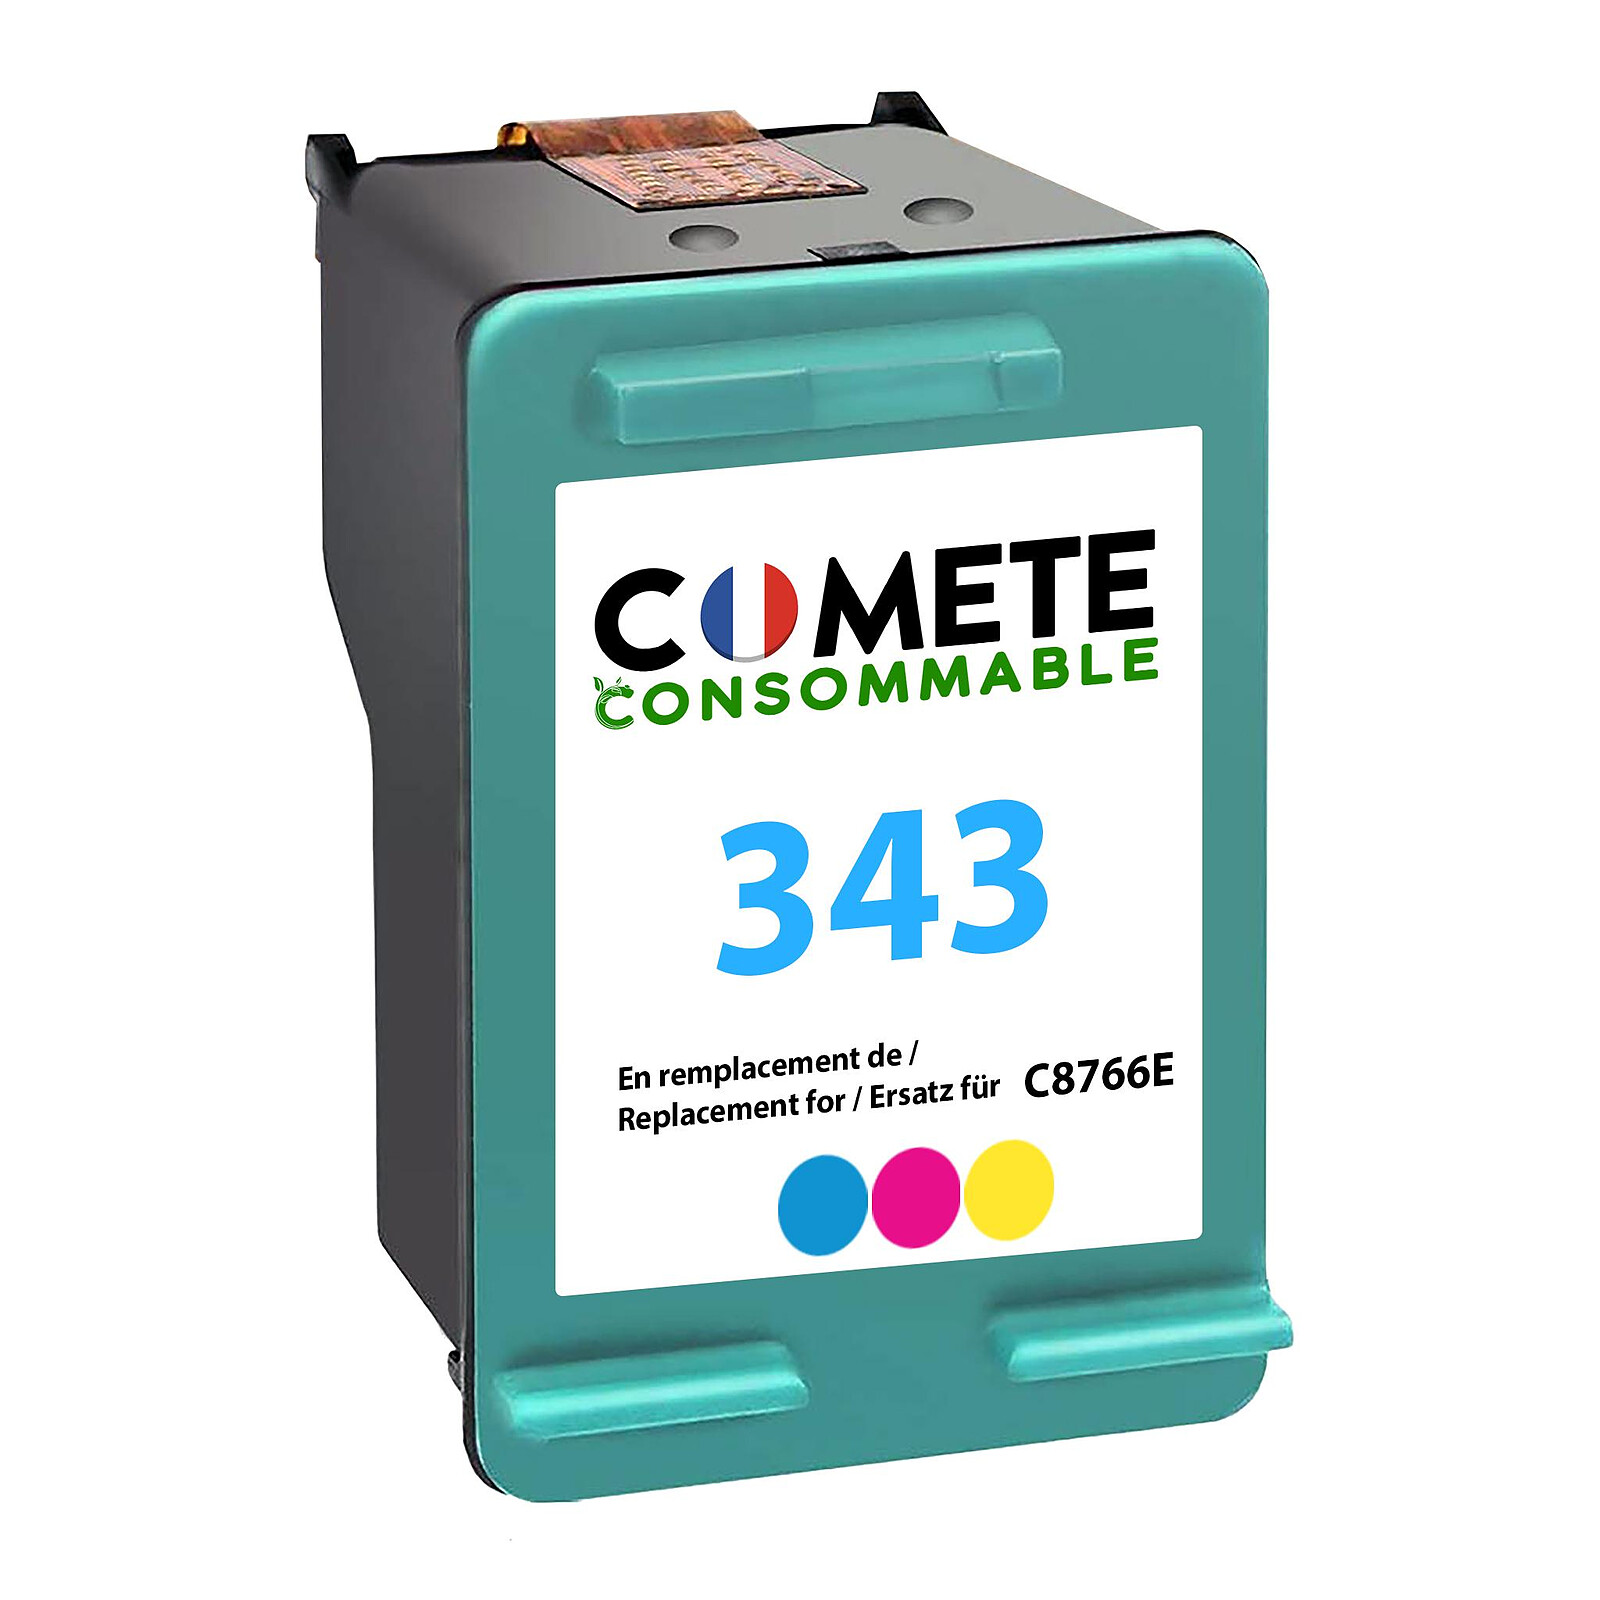 COMETE - HP 304XL - 1 cartouche compatible HP 304XL - Noir - Marque  française - Cartouche imprimante - LDLC